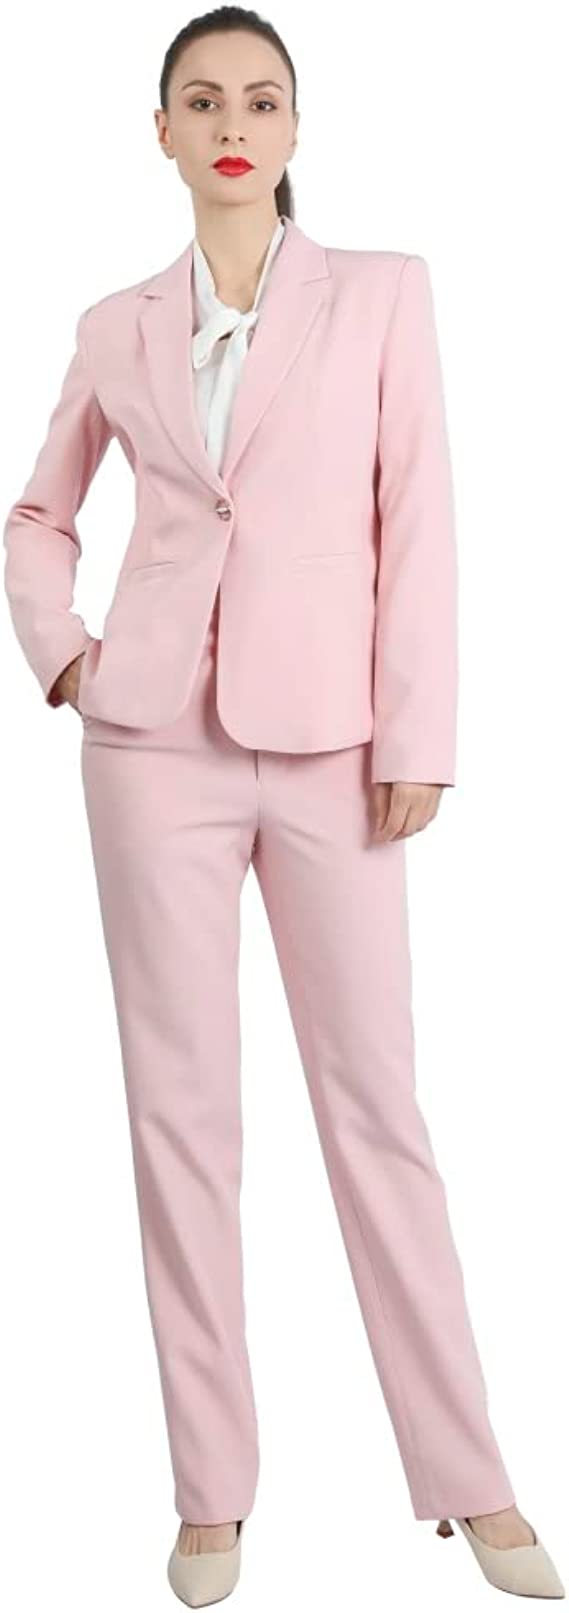 YUNCLOS Women's 2 Piece Office Work Suit Set